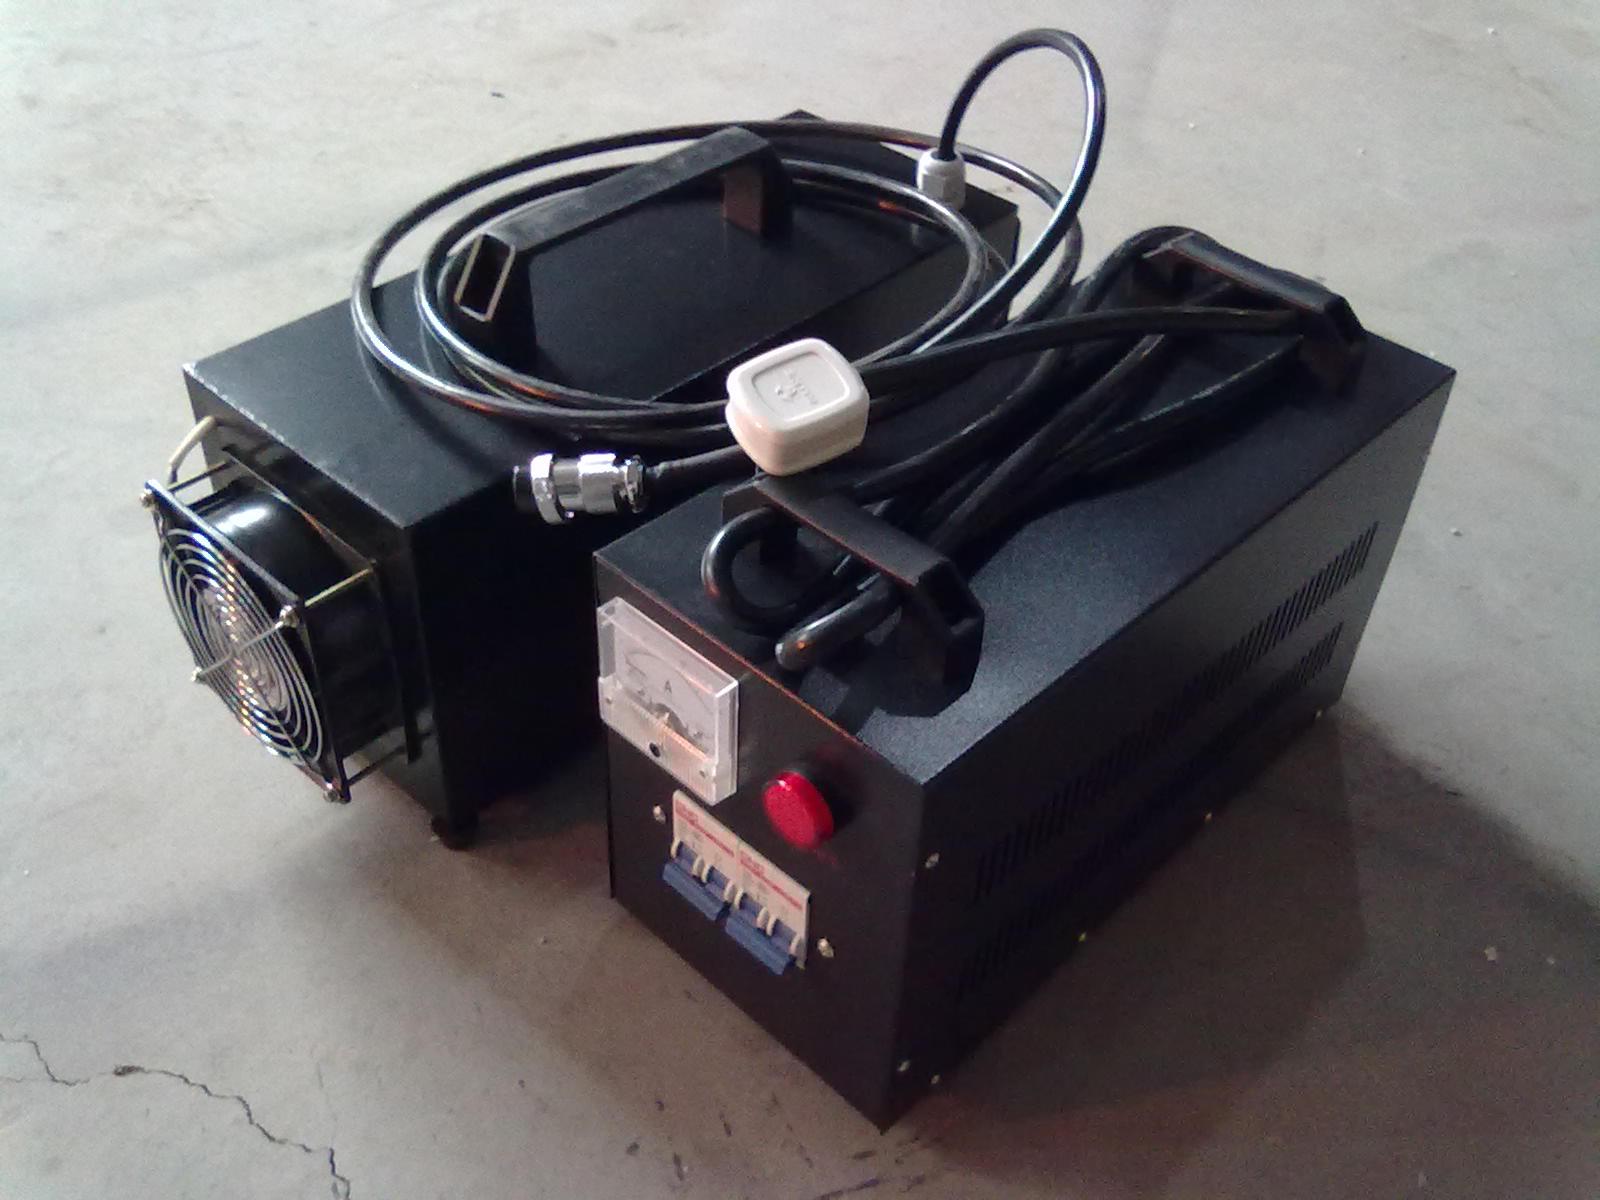 Handbediende UV-bestralingsmachine die coatings voor het overspuiten van auto's uithardt